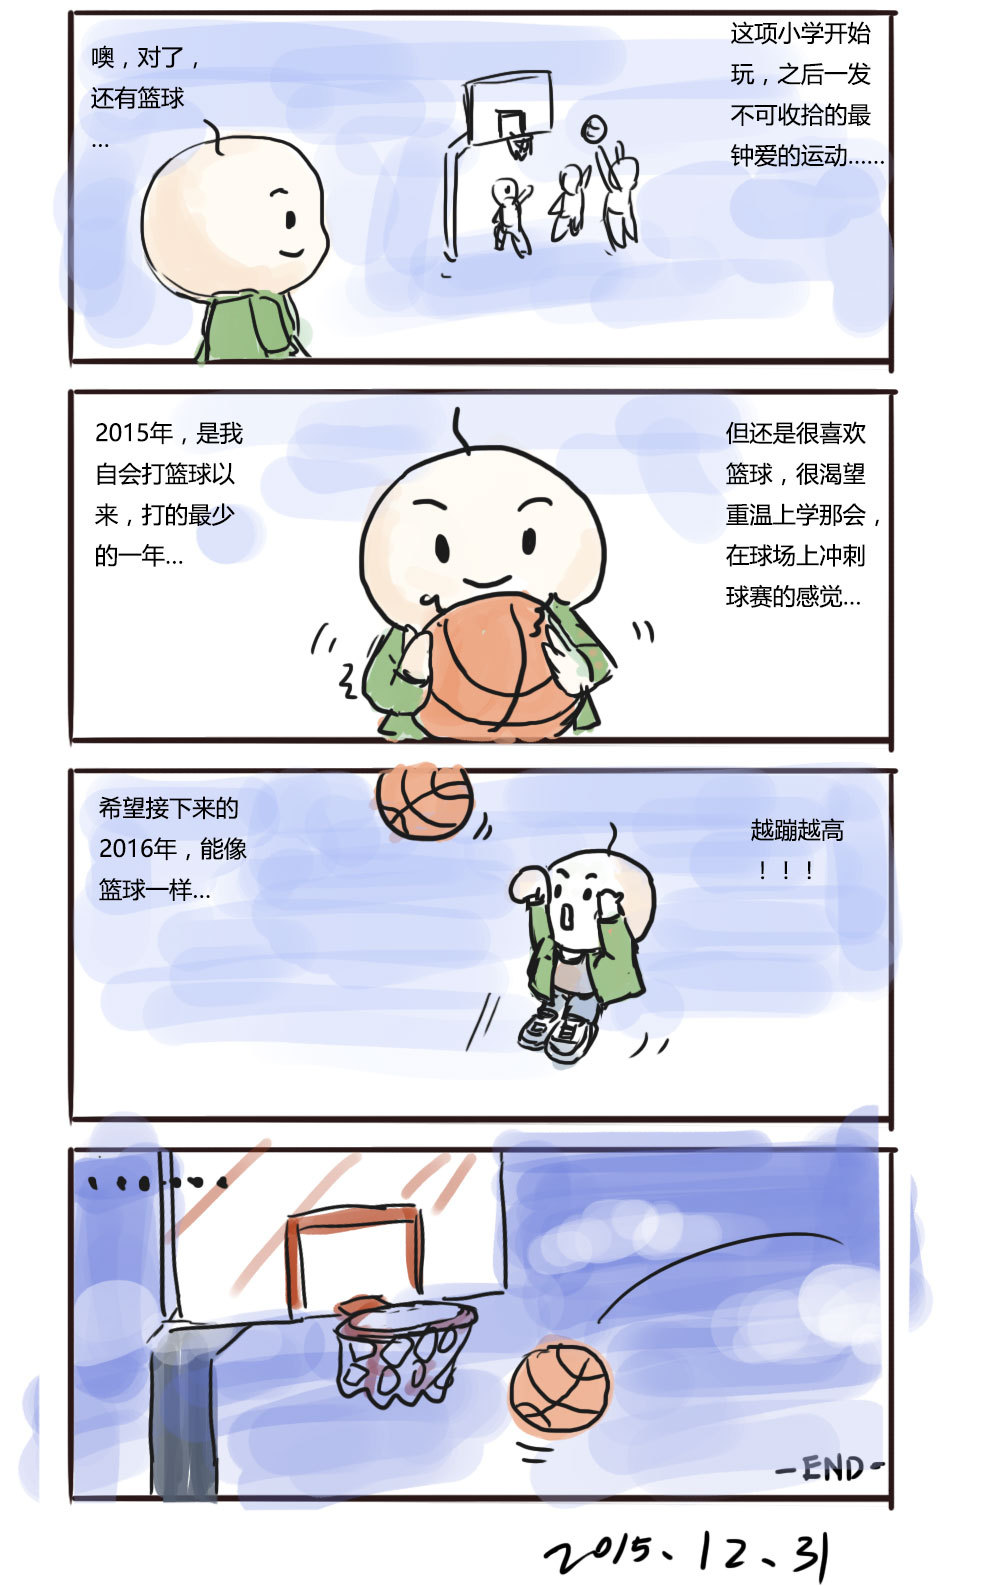 春节漫画四格简单图片